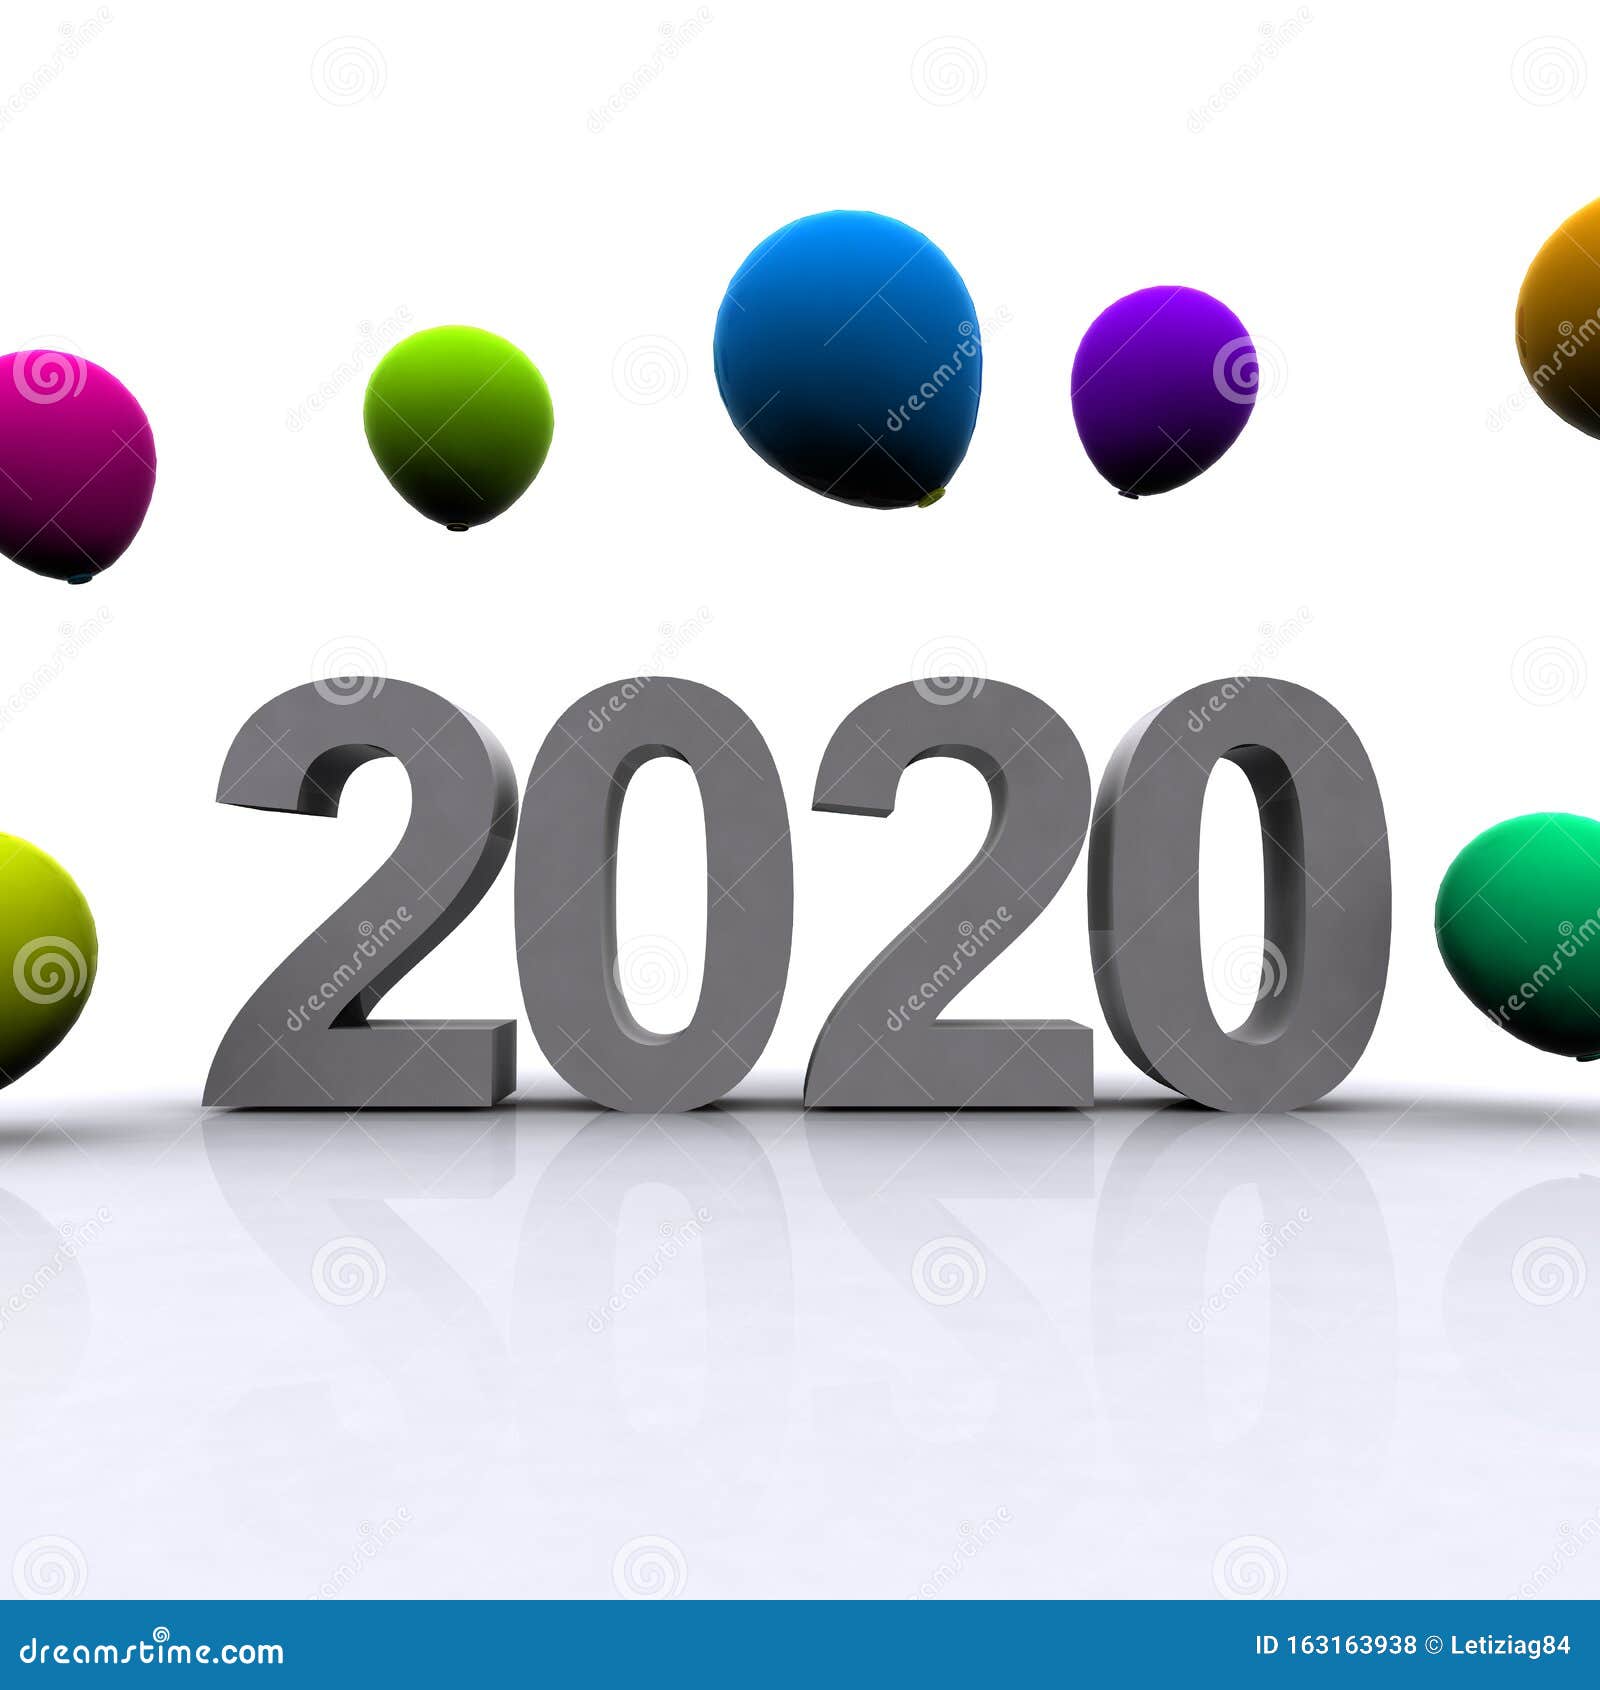 nuovo anno 2020 con palloncini colorati